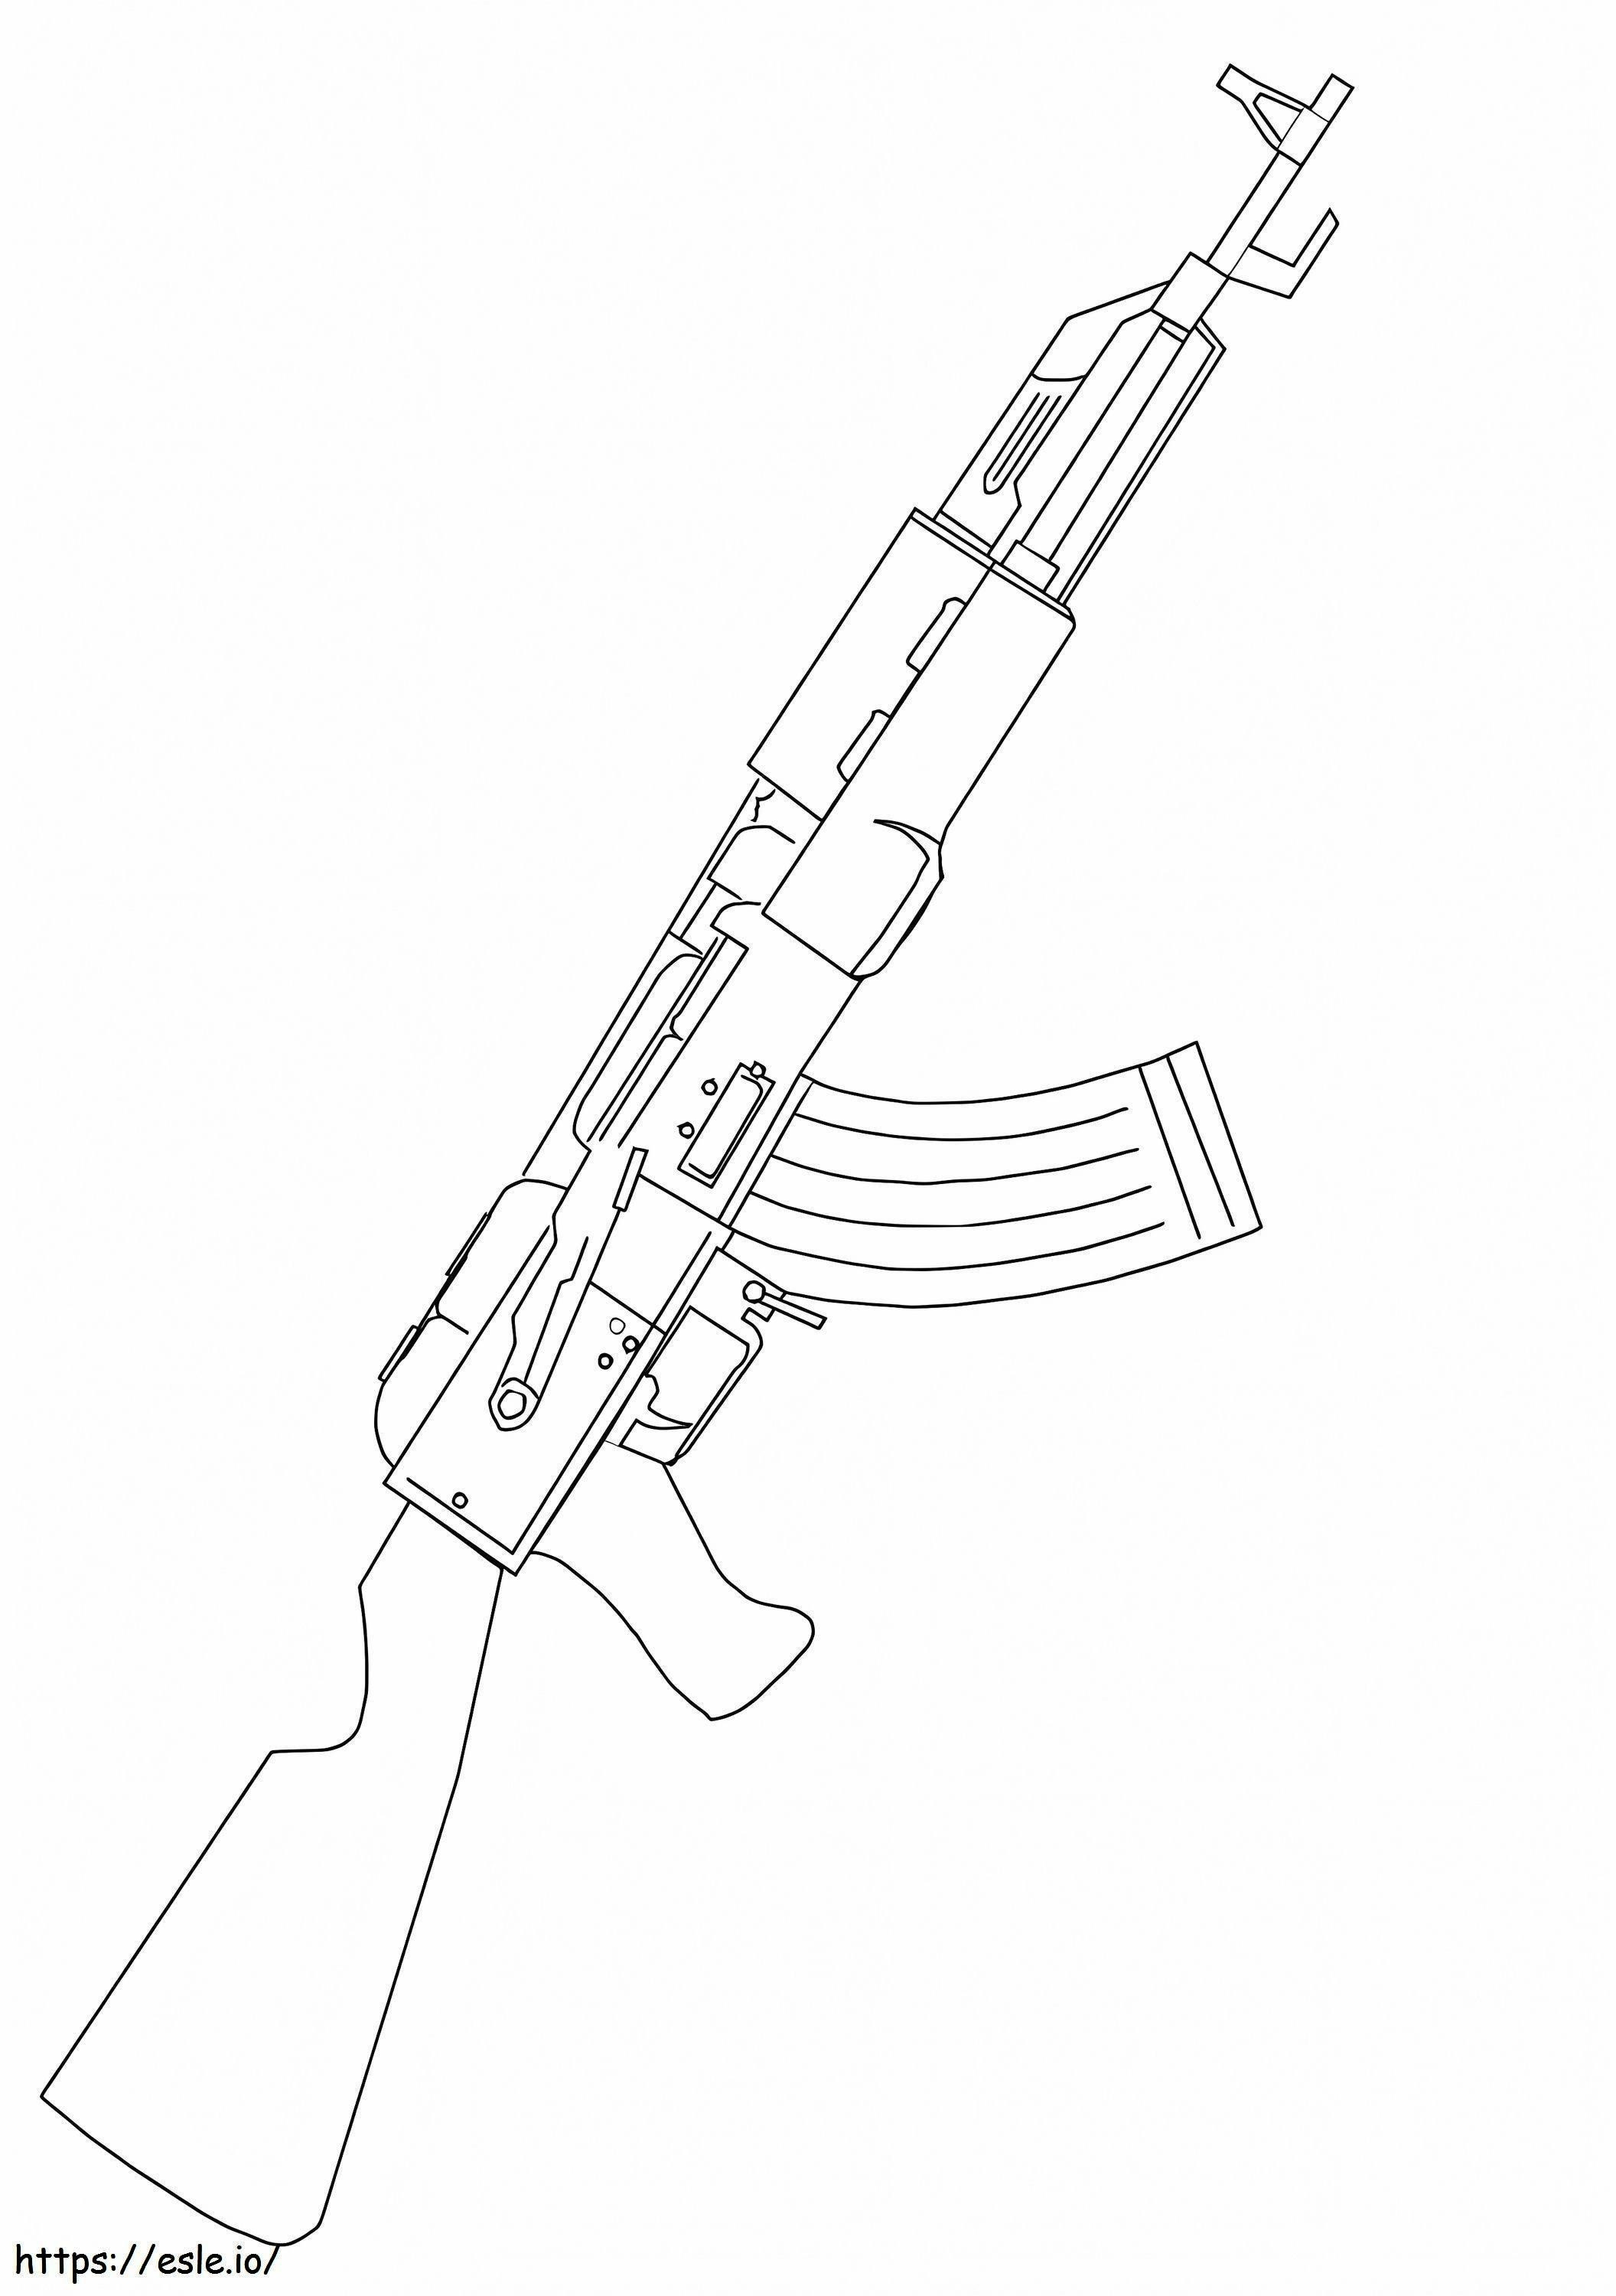 AK 47 rynnäkkökivääri värityskuva